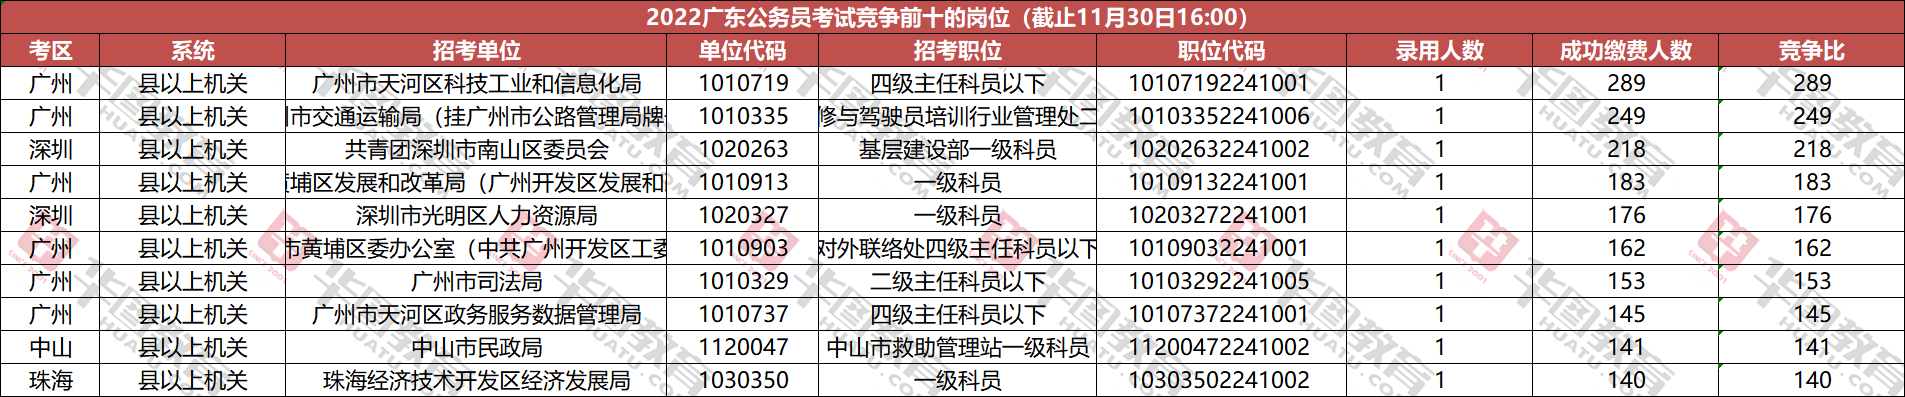 2022广东公务员考试报名人数统计：深圳考区6008报名，90岗位无人报名（截至11月30日16时）